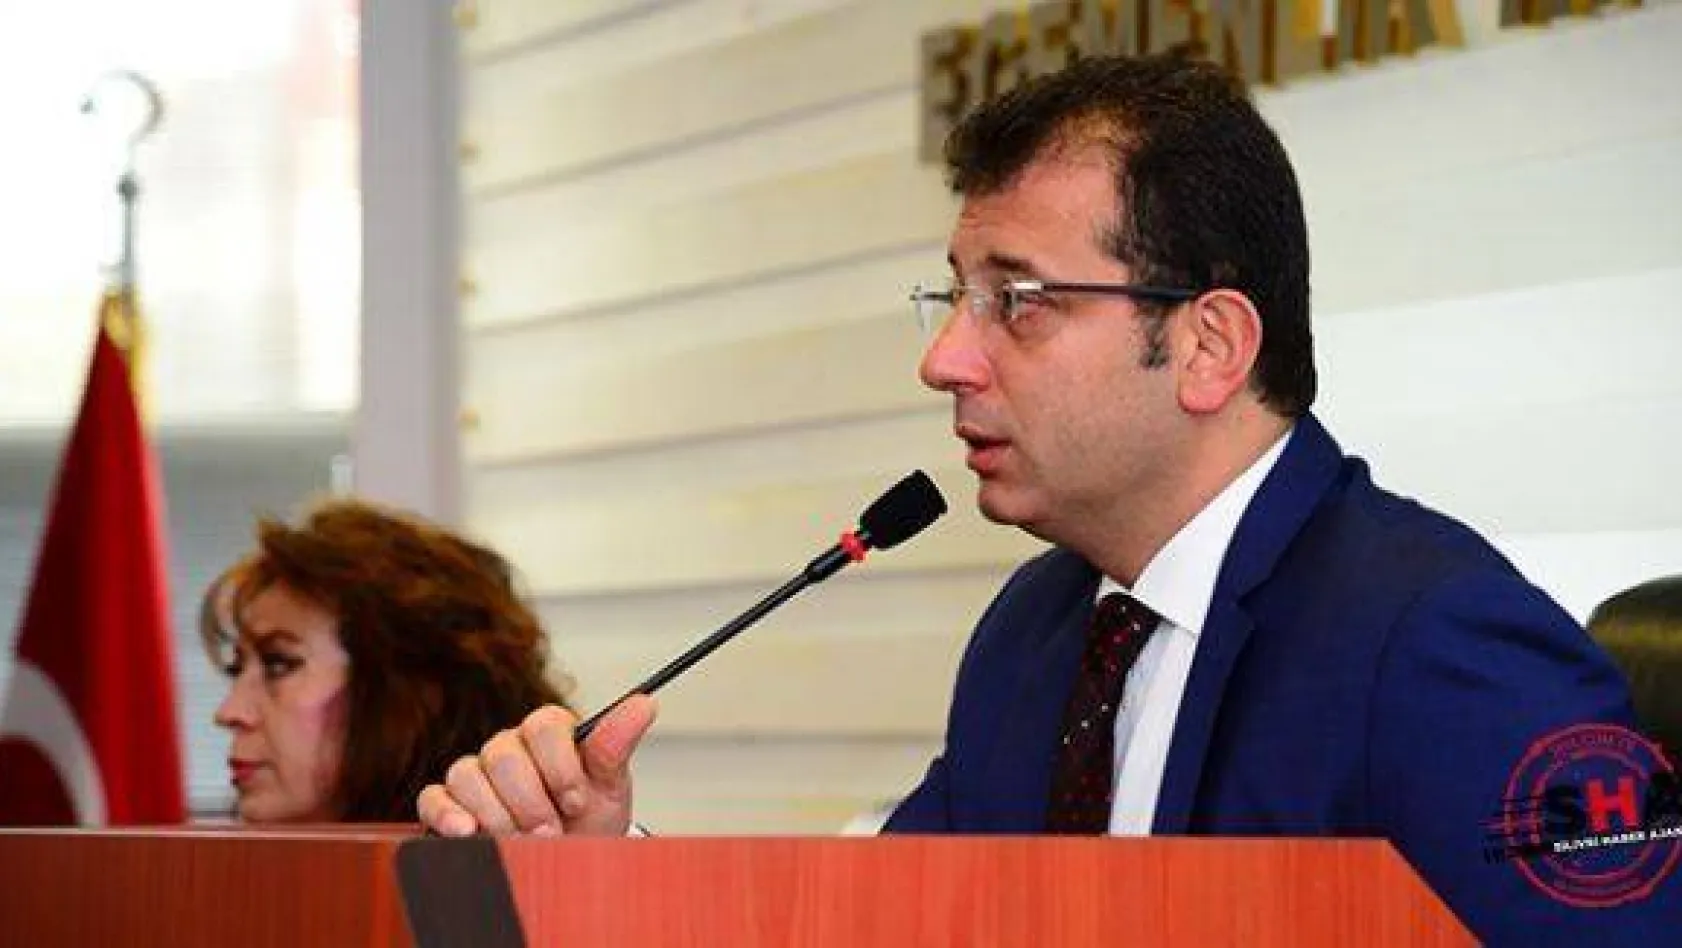 CHP'nin İstanbul Büyükşehir Belediye Başkan adayı belli oldu